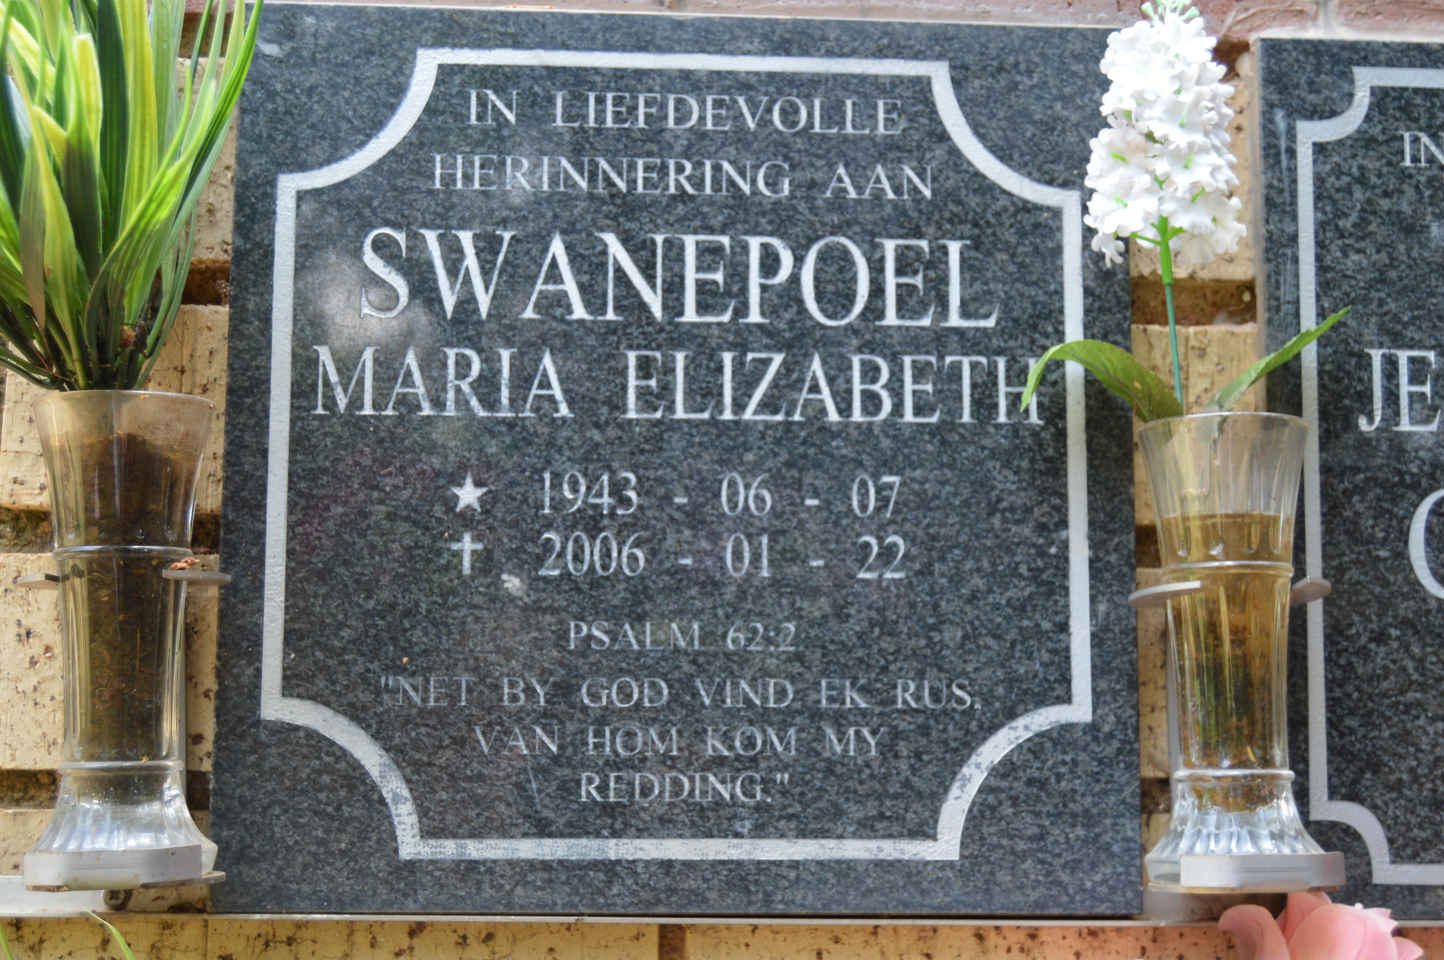 SWANEPOEL Maria Elizabeth 1943-2006